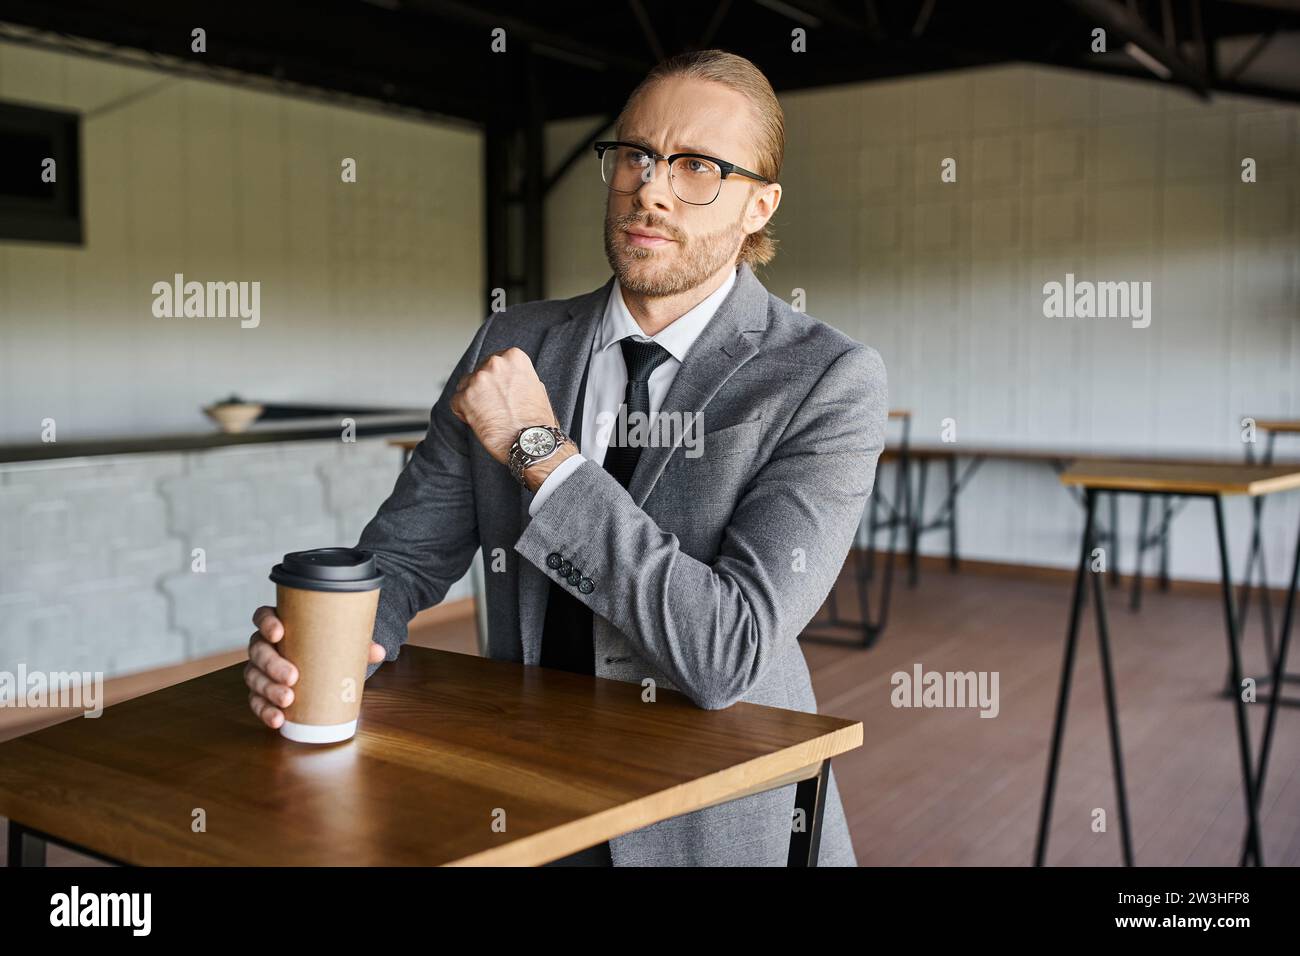 elegante e professionale in un'elegante tuta che regge una tazza di caffè e guarda lontano, concetto di business Foto Stock